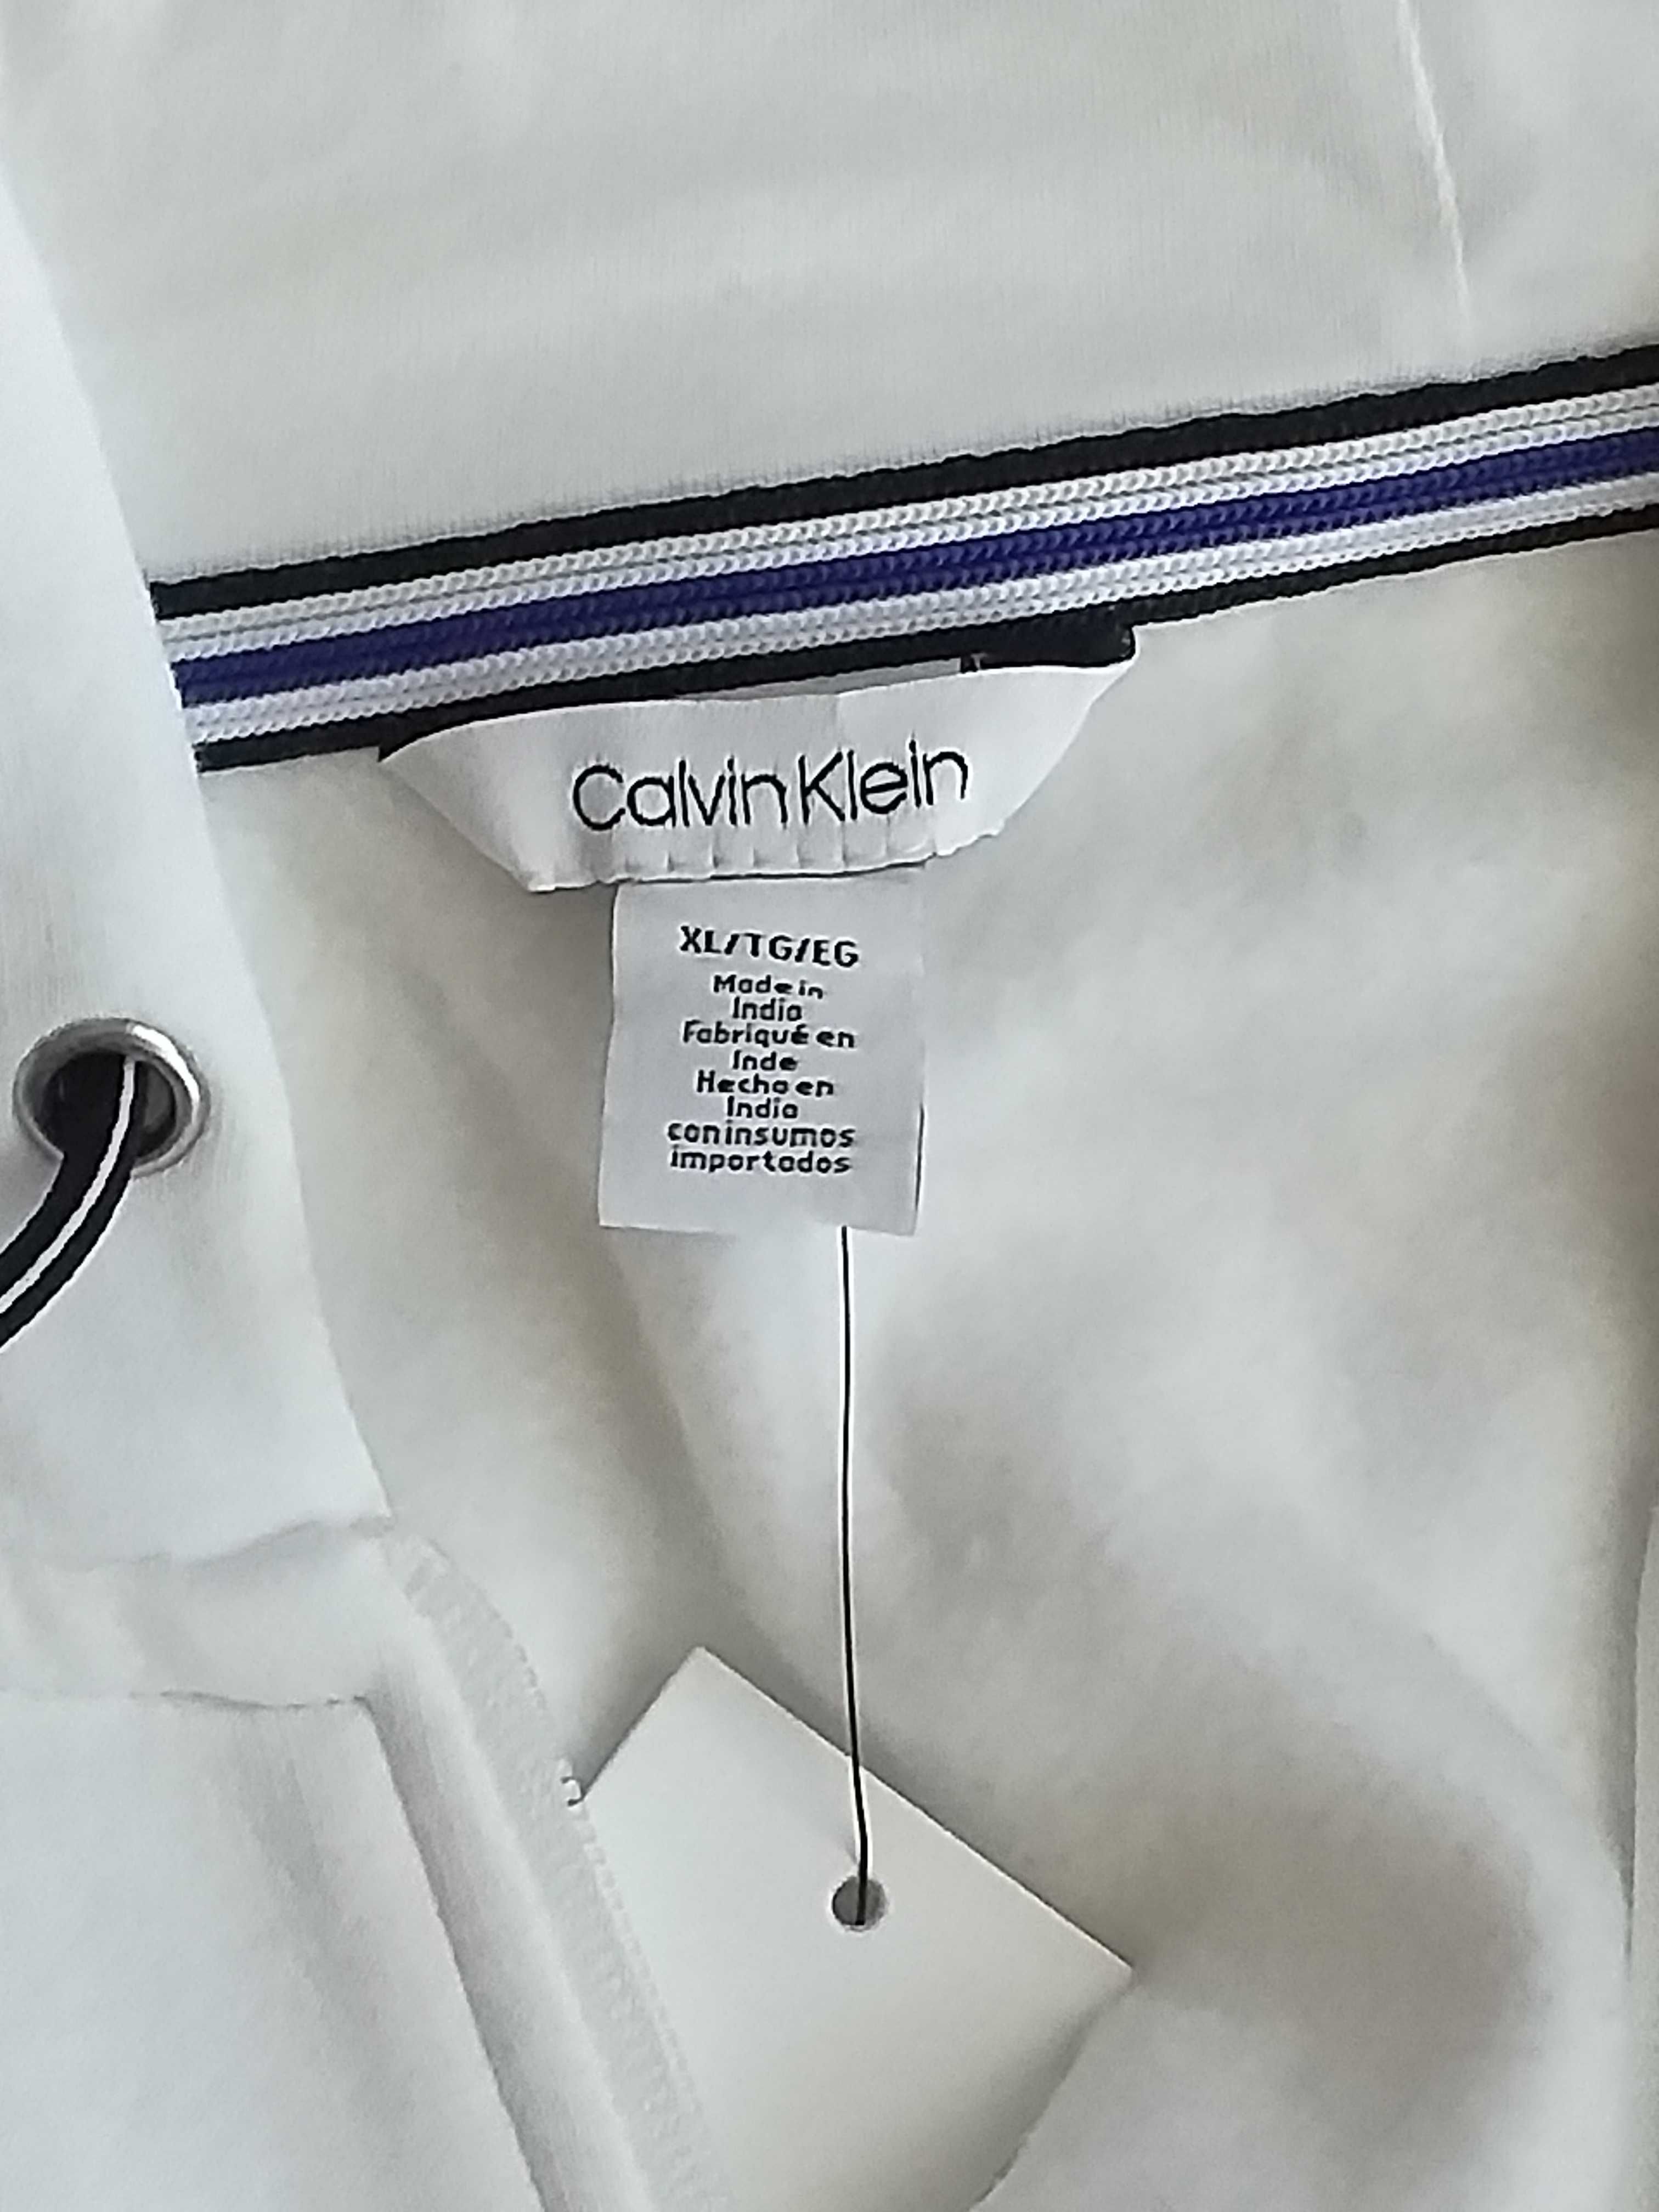 Bluza rozpinana z kapturem Calvin Klein męska XL